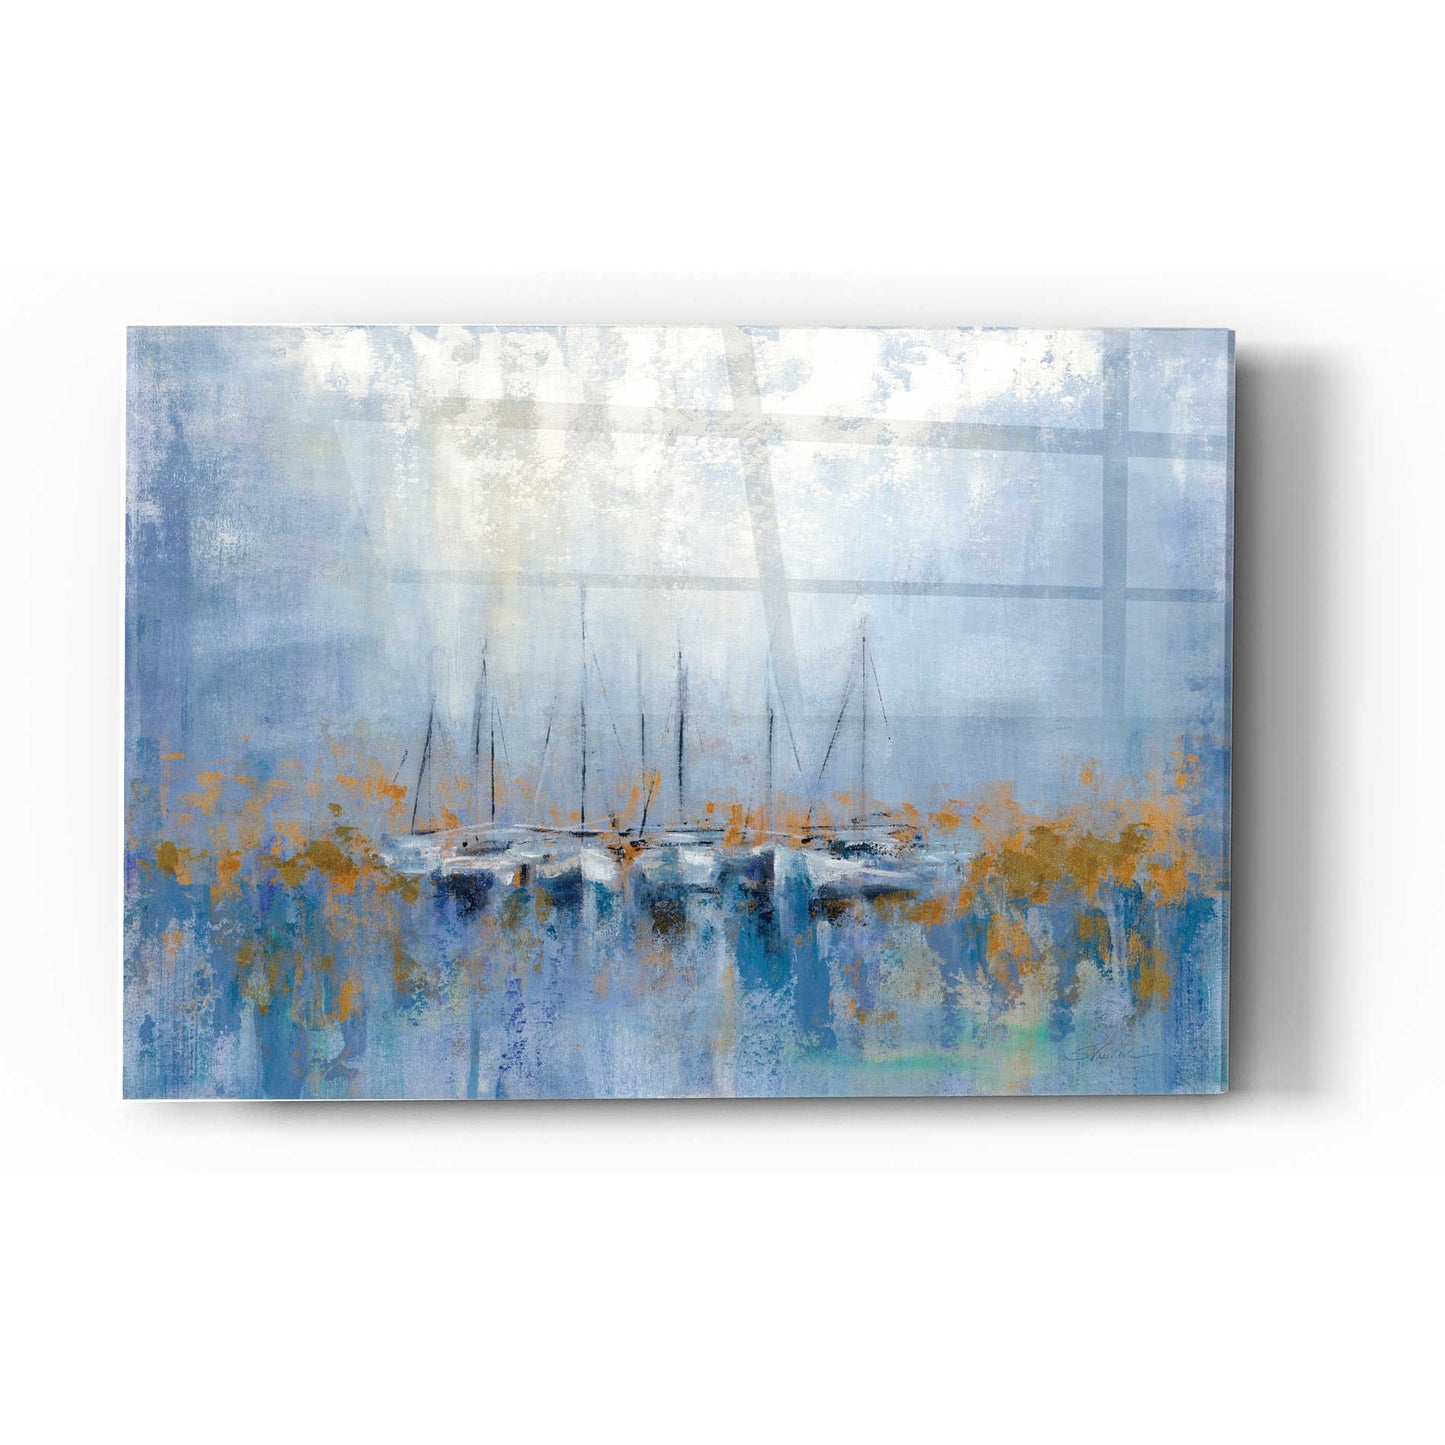 Epic Art 'Boats in the Harbor' by Silvia Vassileva, Acrylic Glass Wall Art,16x24